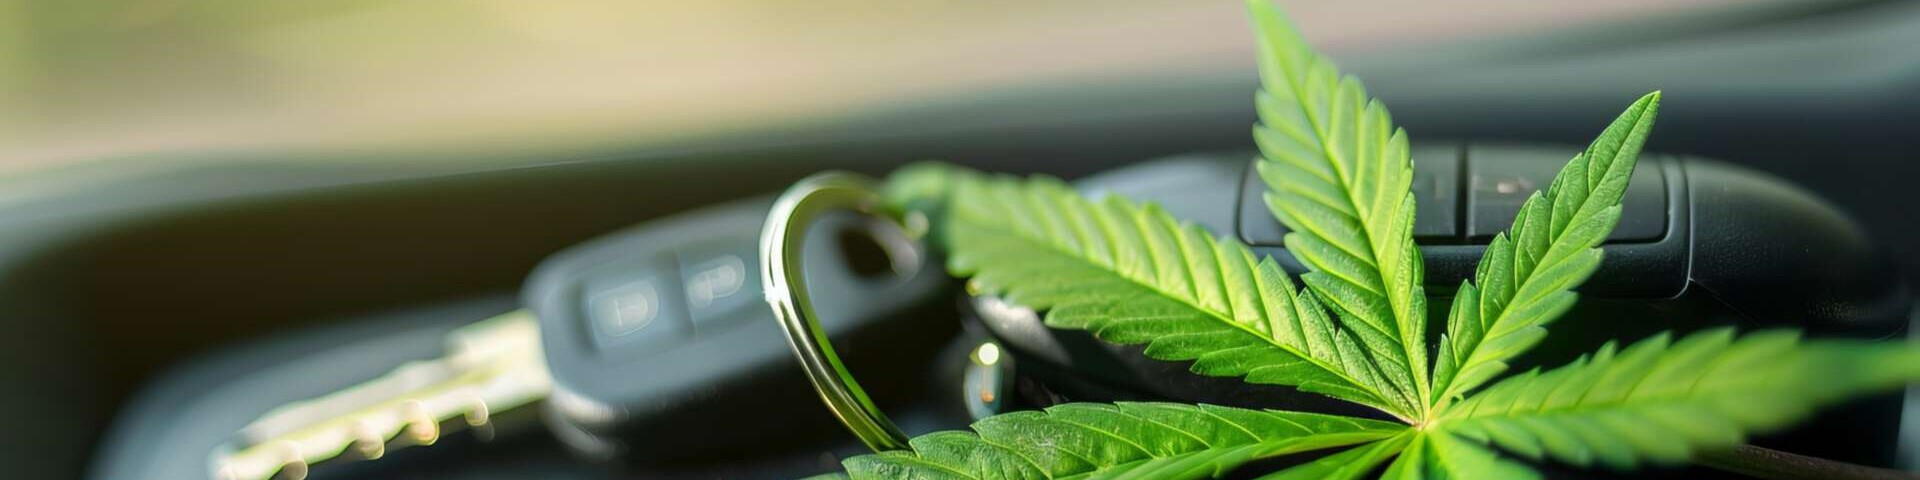 Cannabispflanze mit Autoschlüssel liegen im Pkw.